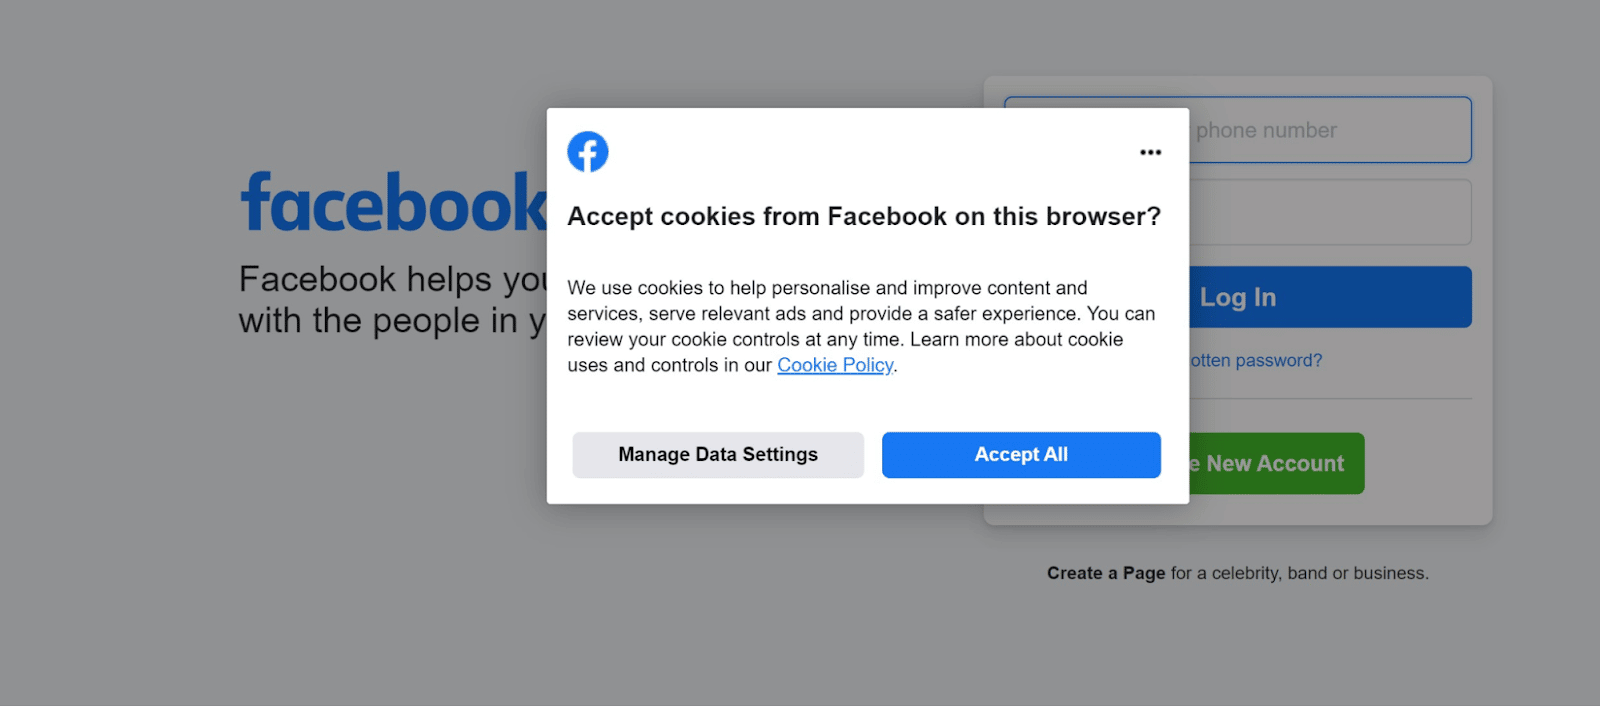 Uma solicitação de consentimento do consumidor do Facebook